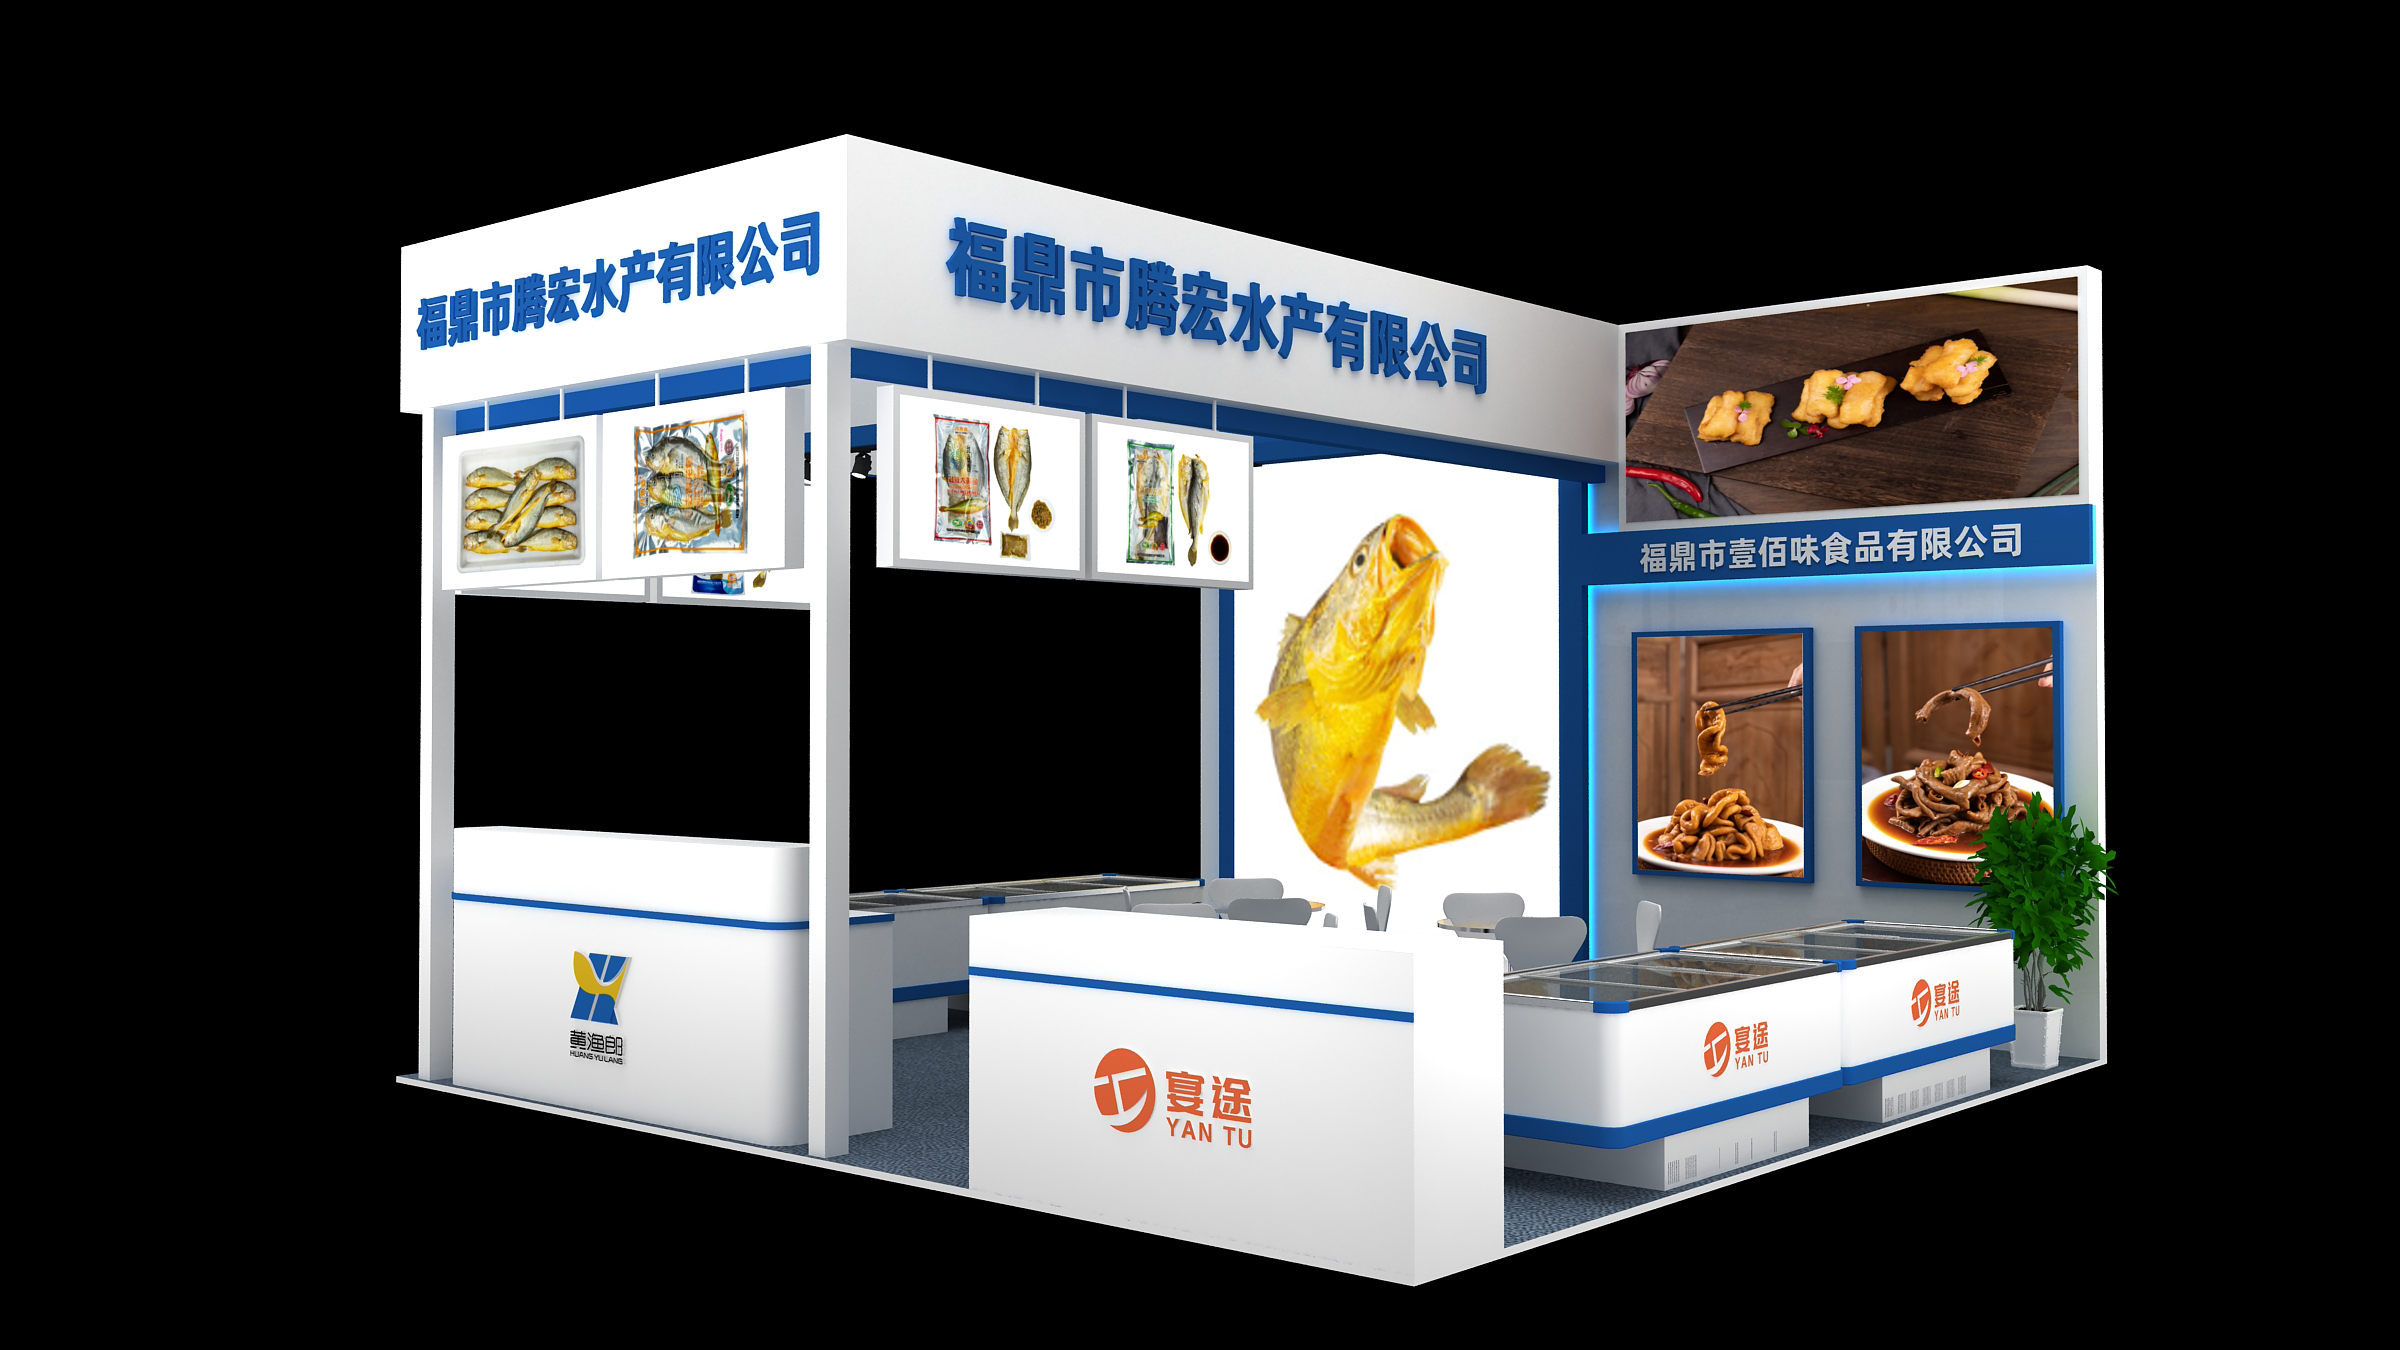 【特装欣赏合集二】 第14届歌华食材展将于8月23-25日亮相上海新国际博览中心(图67)